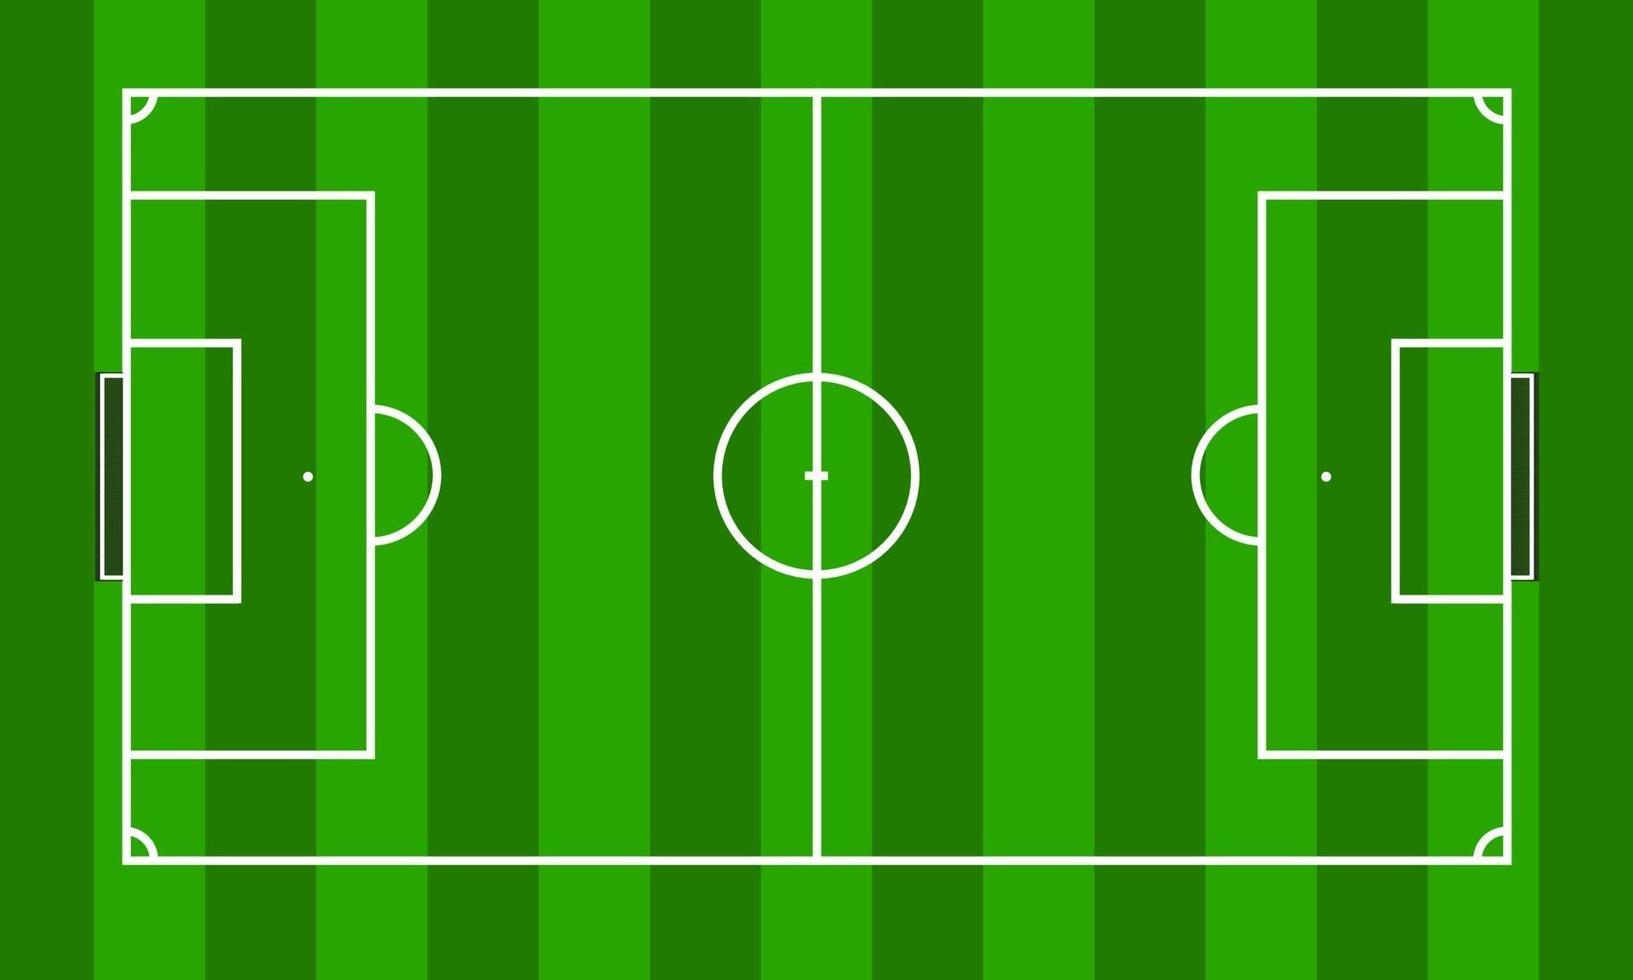 Soccer field in green grass stadium vector